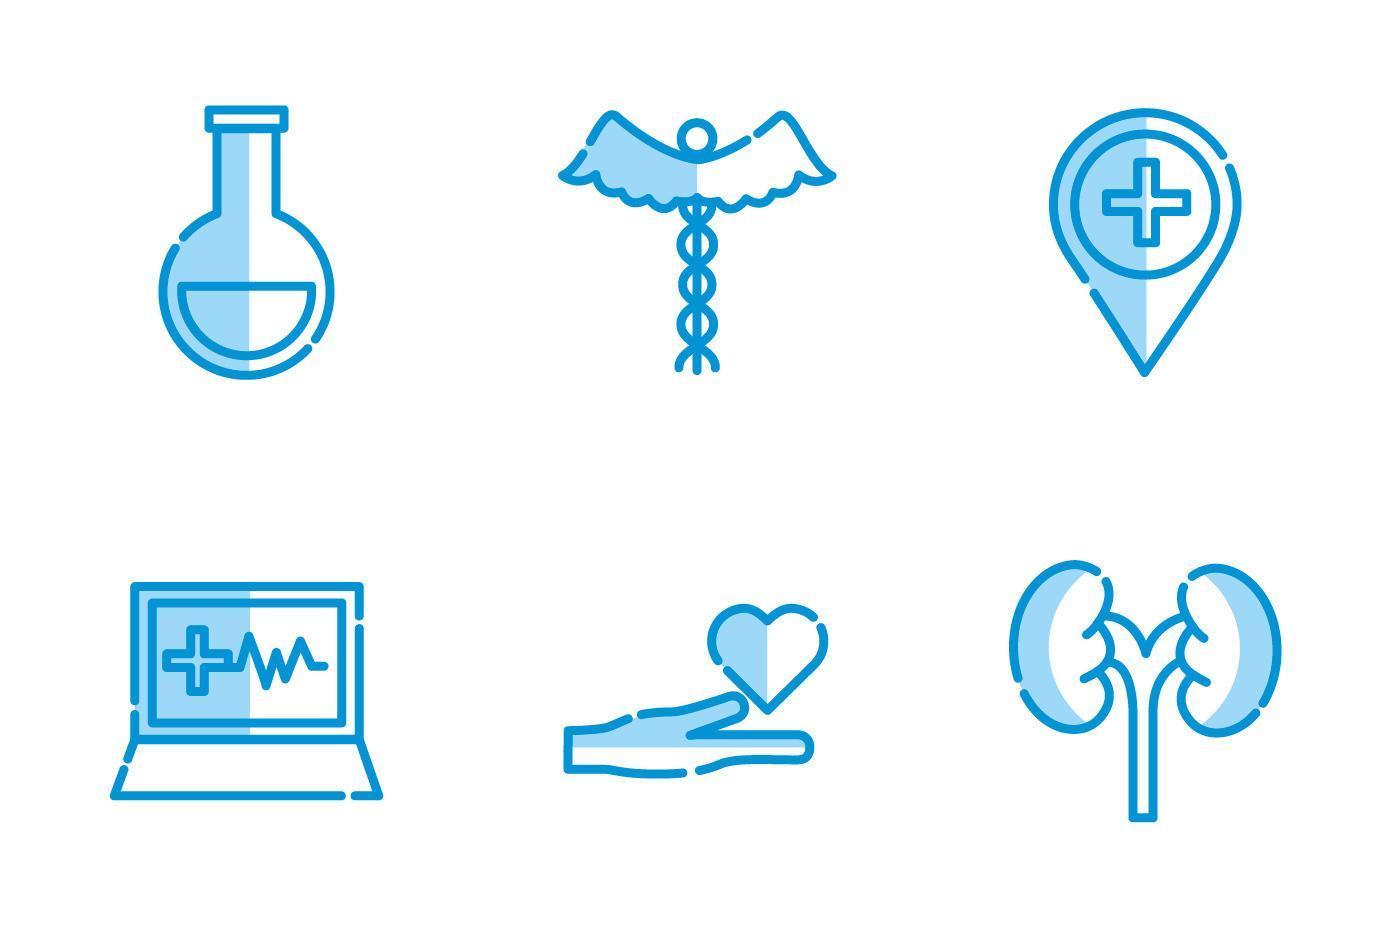 disegno vettoriale set di icone mediche isolate